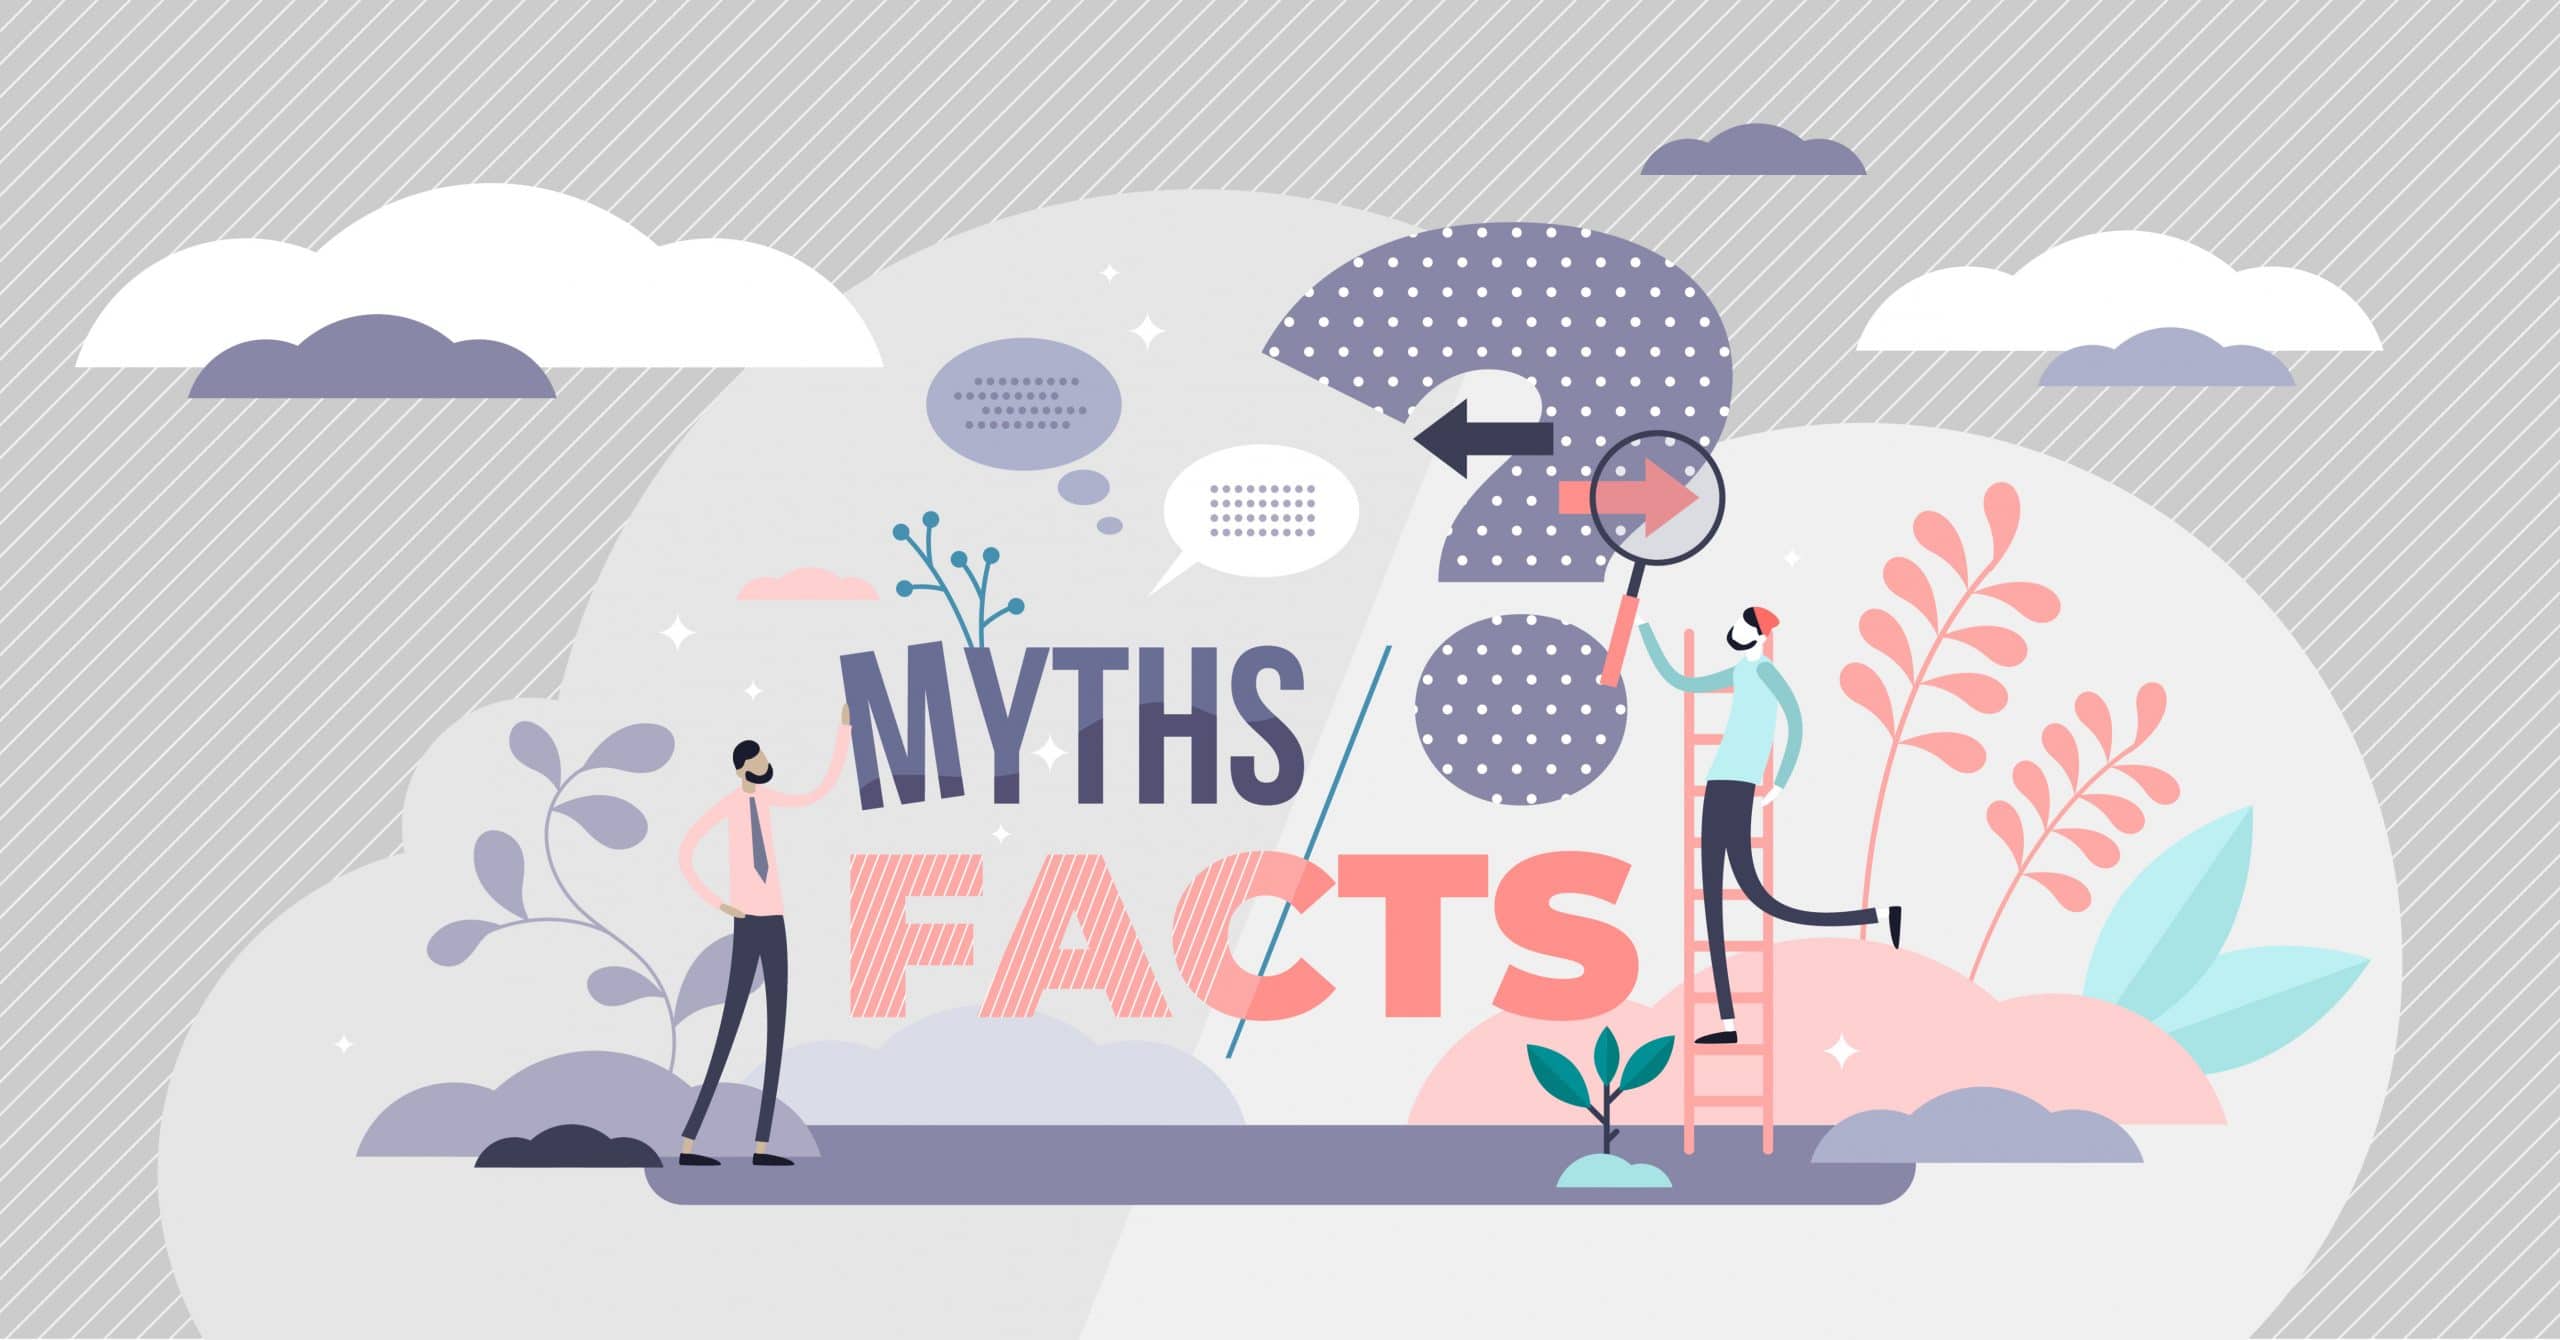 affilite marketing myths debunked